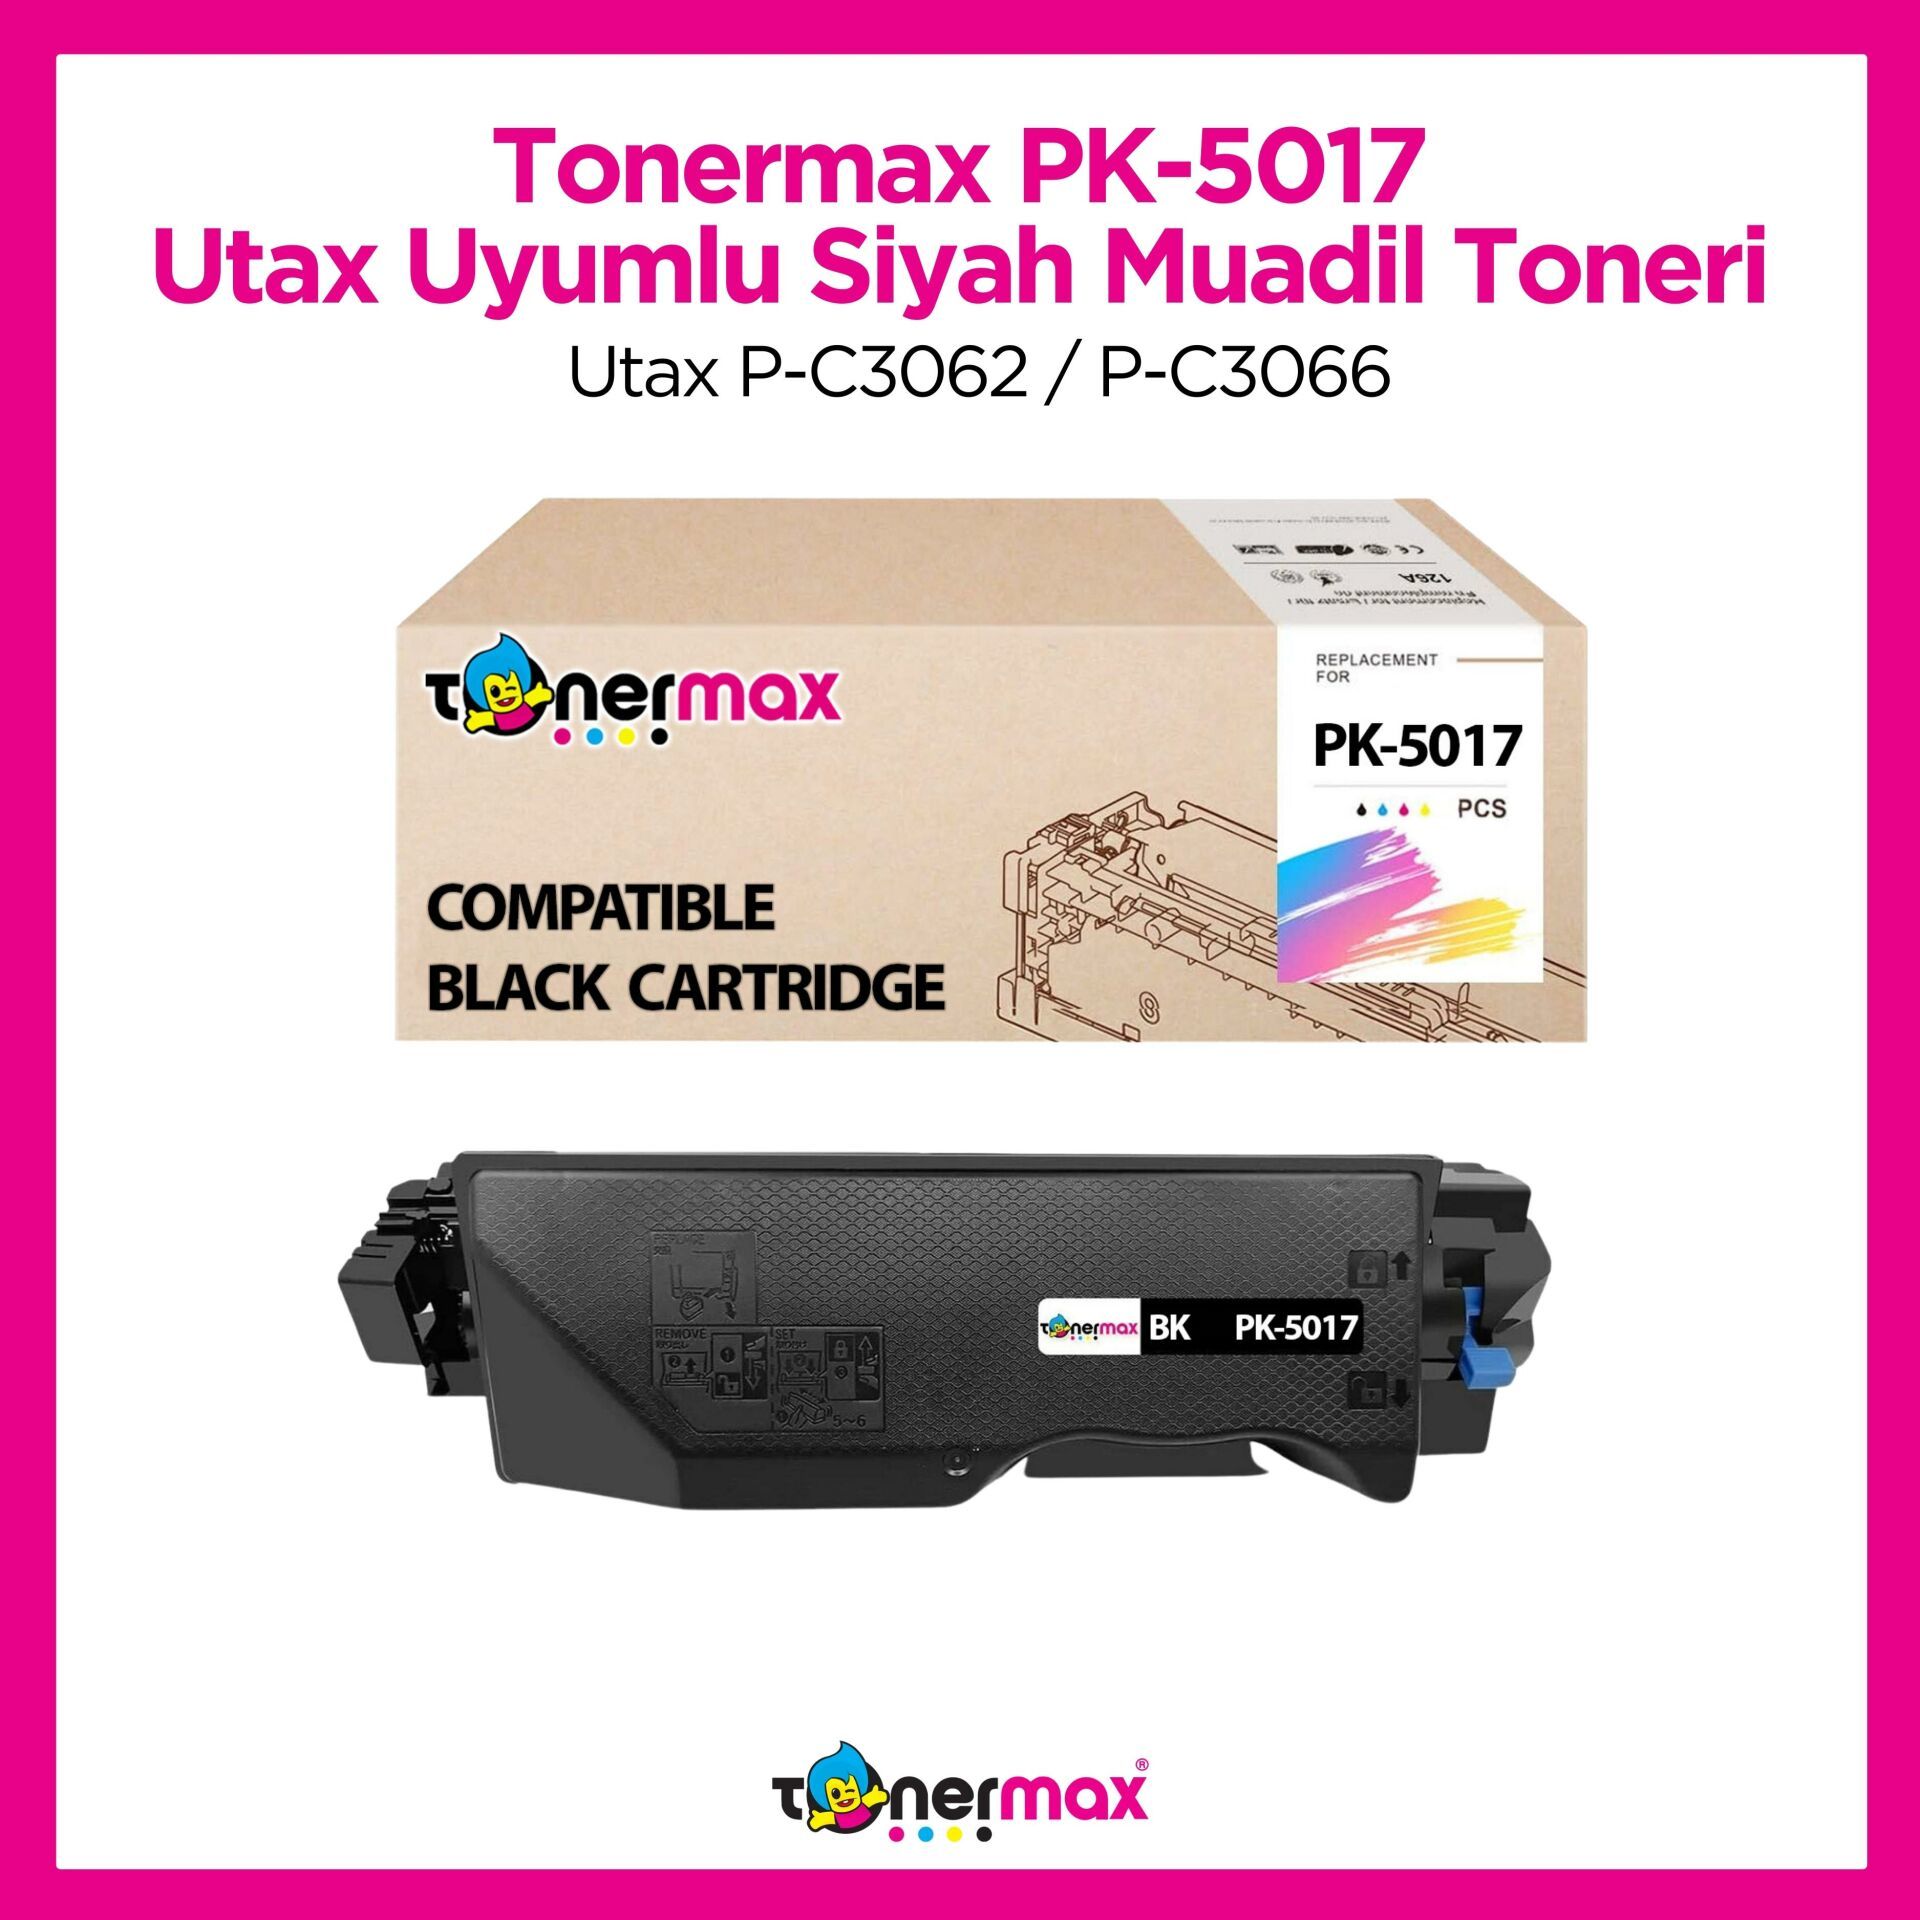 Utax PK-5017 Muadil Toner Siyah / Utax P-C3062 / P-C3066